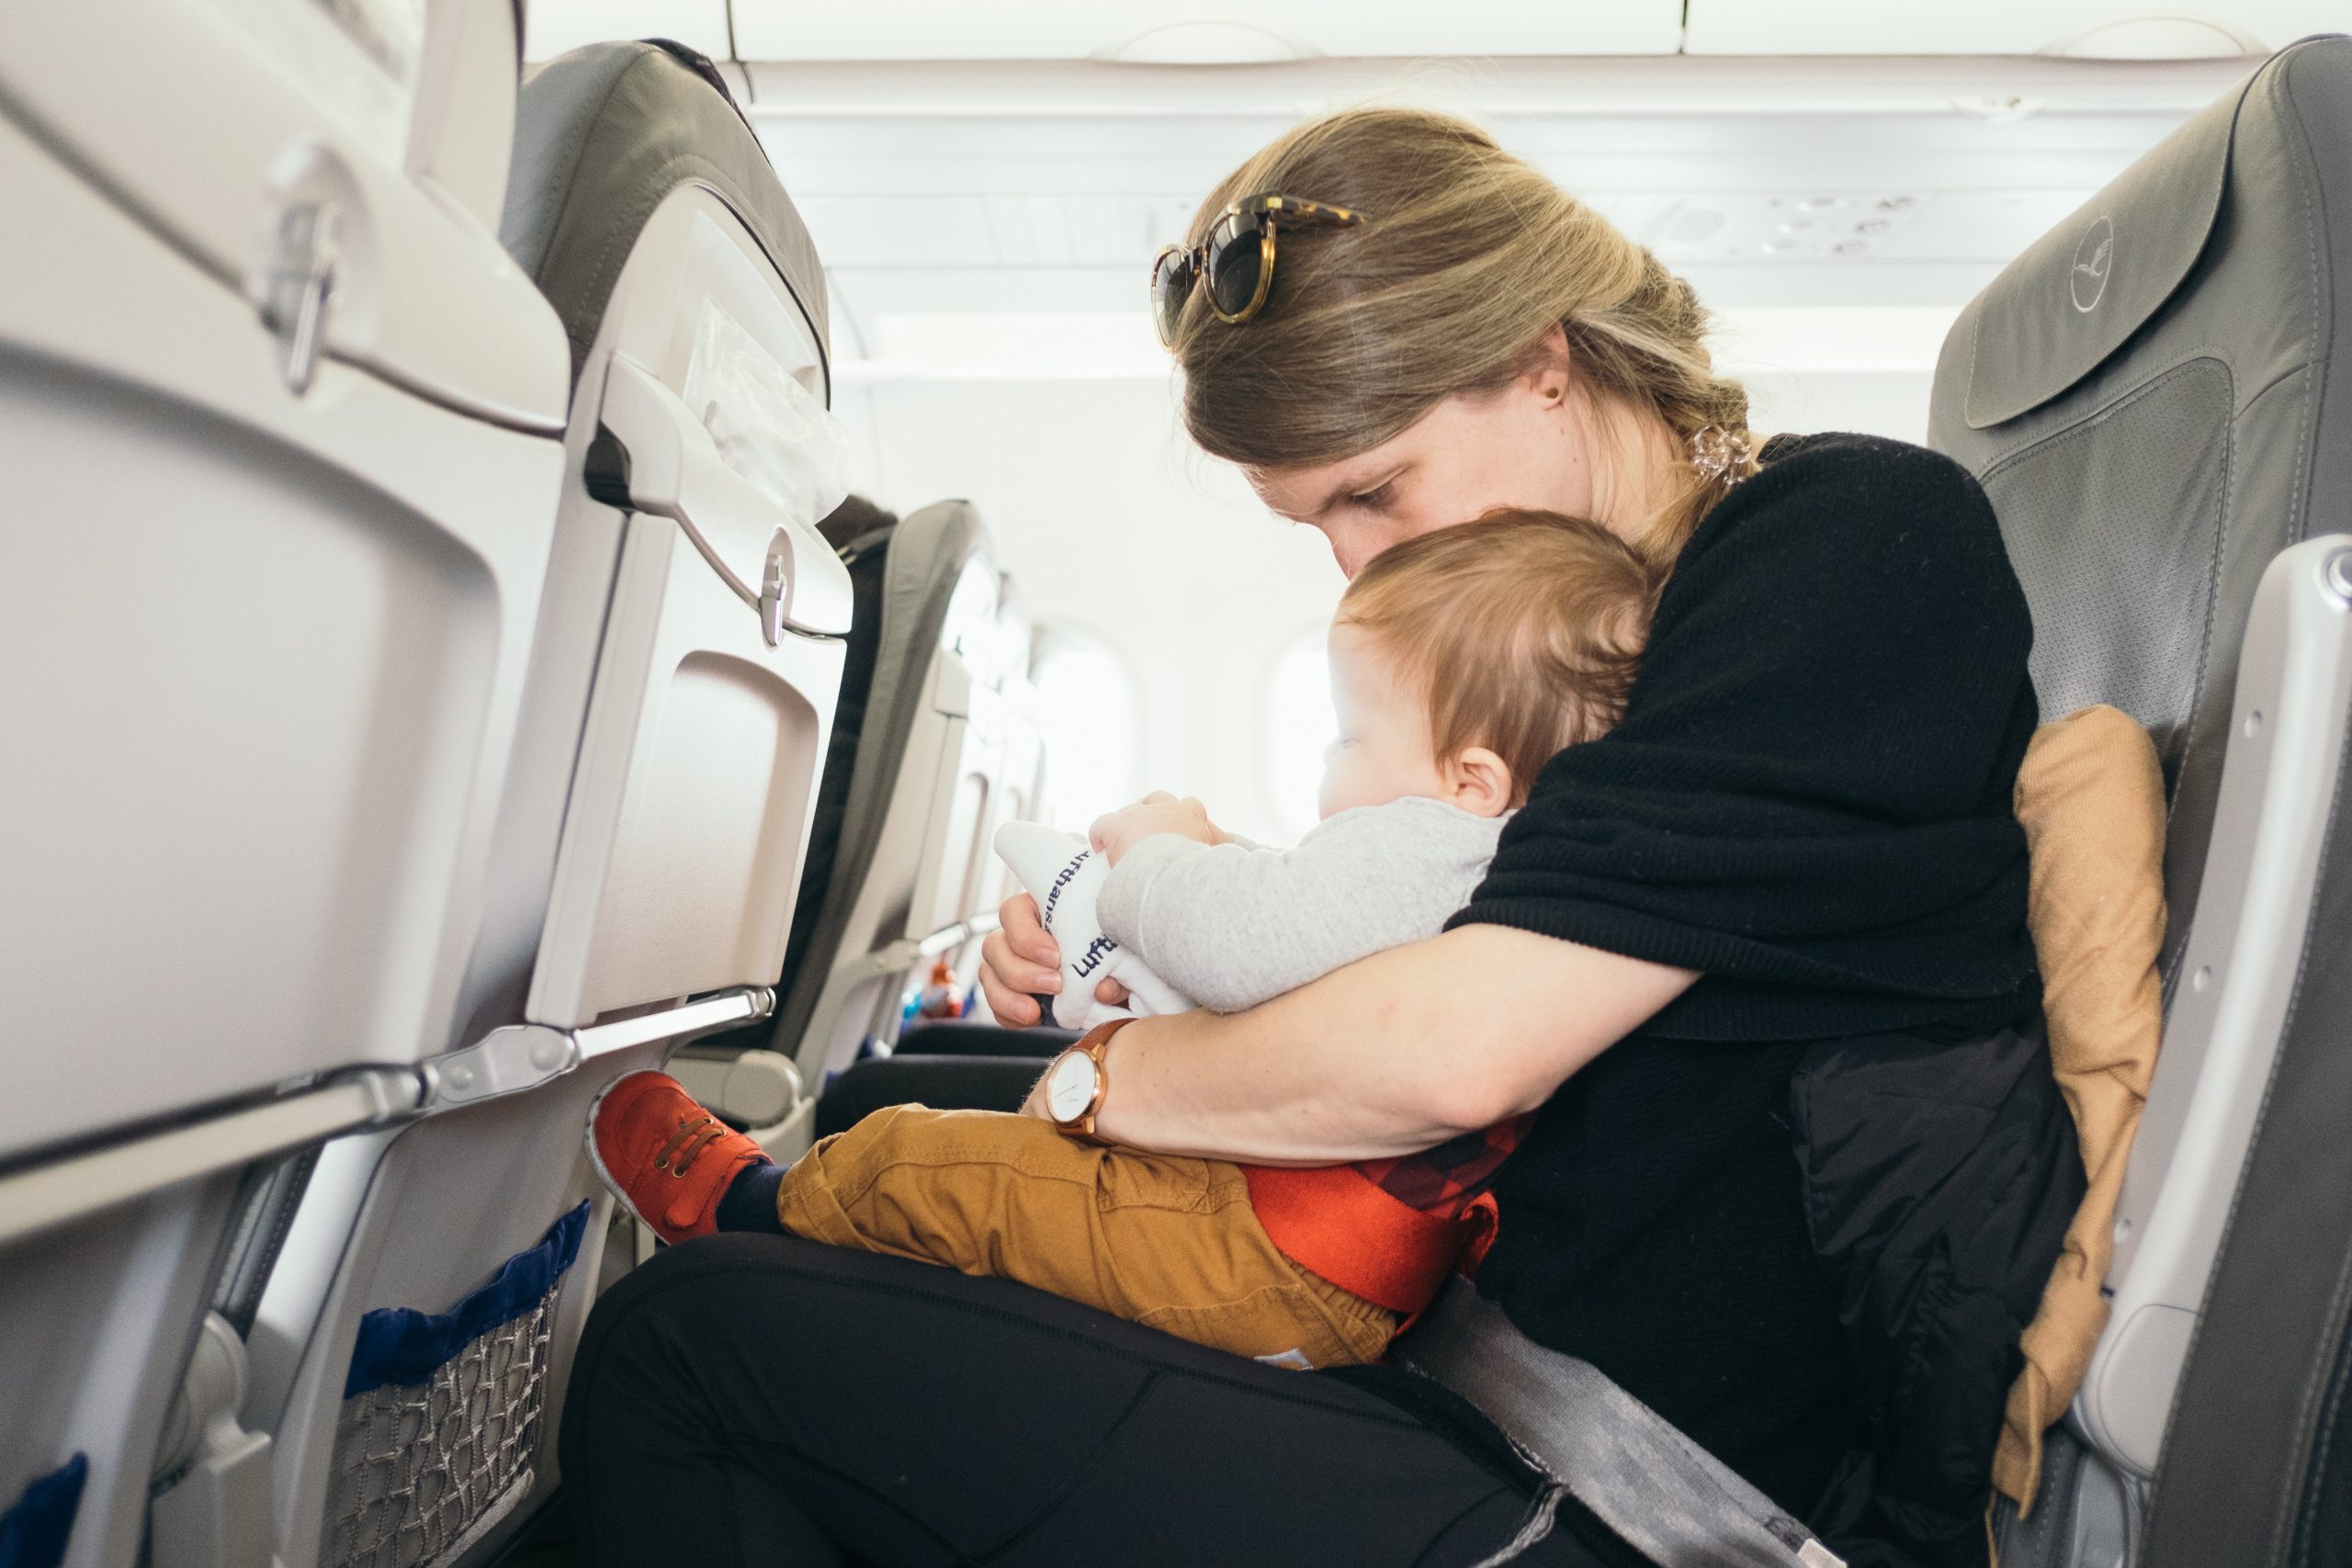 Qué sillas de bebé puedo llevar en un avión?✈ - Periodista Digital